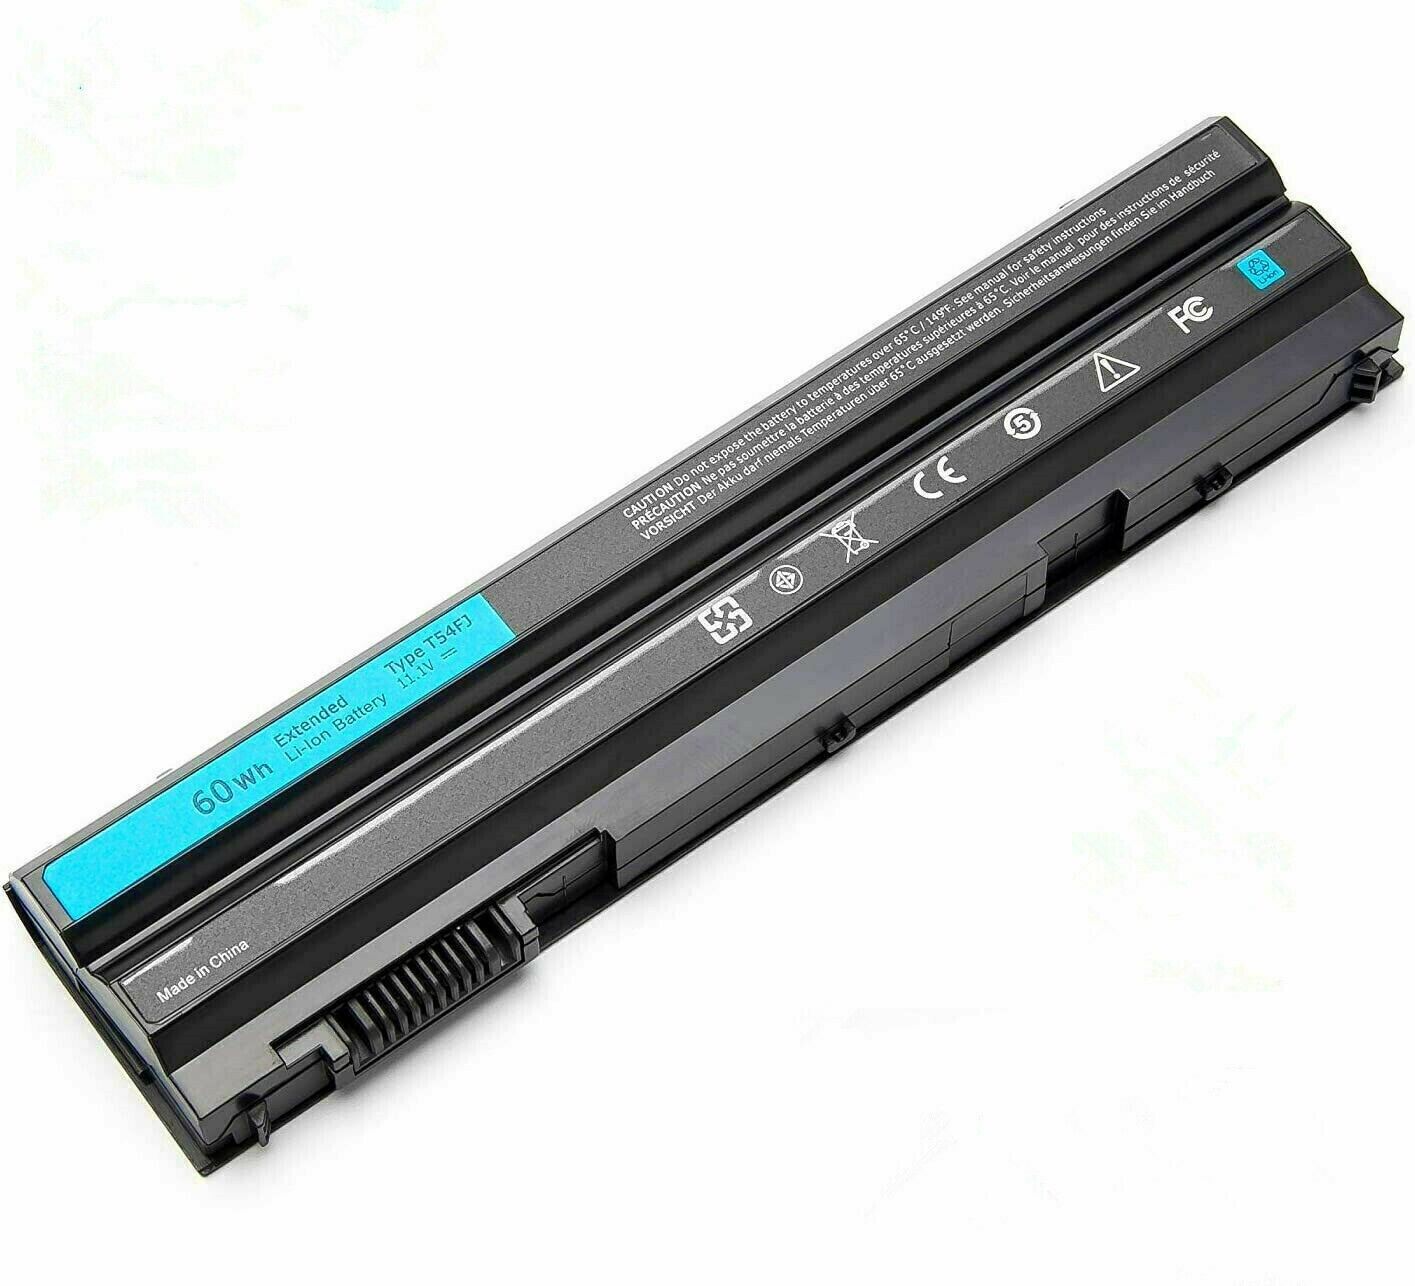 E6420 Battery for Dell Latitude E6440 E5430 E5520 E5530 E6430 E6540 E6520 T54FJ